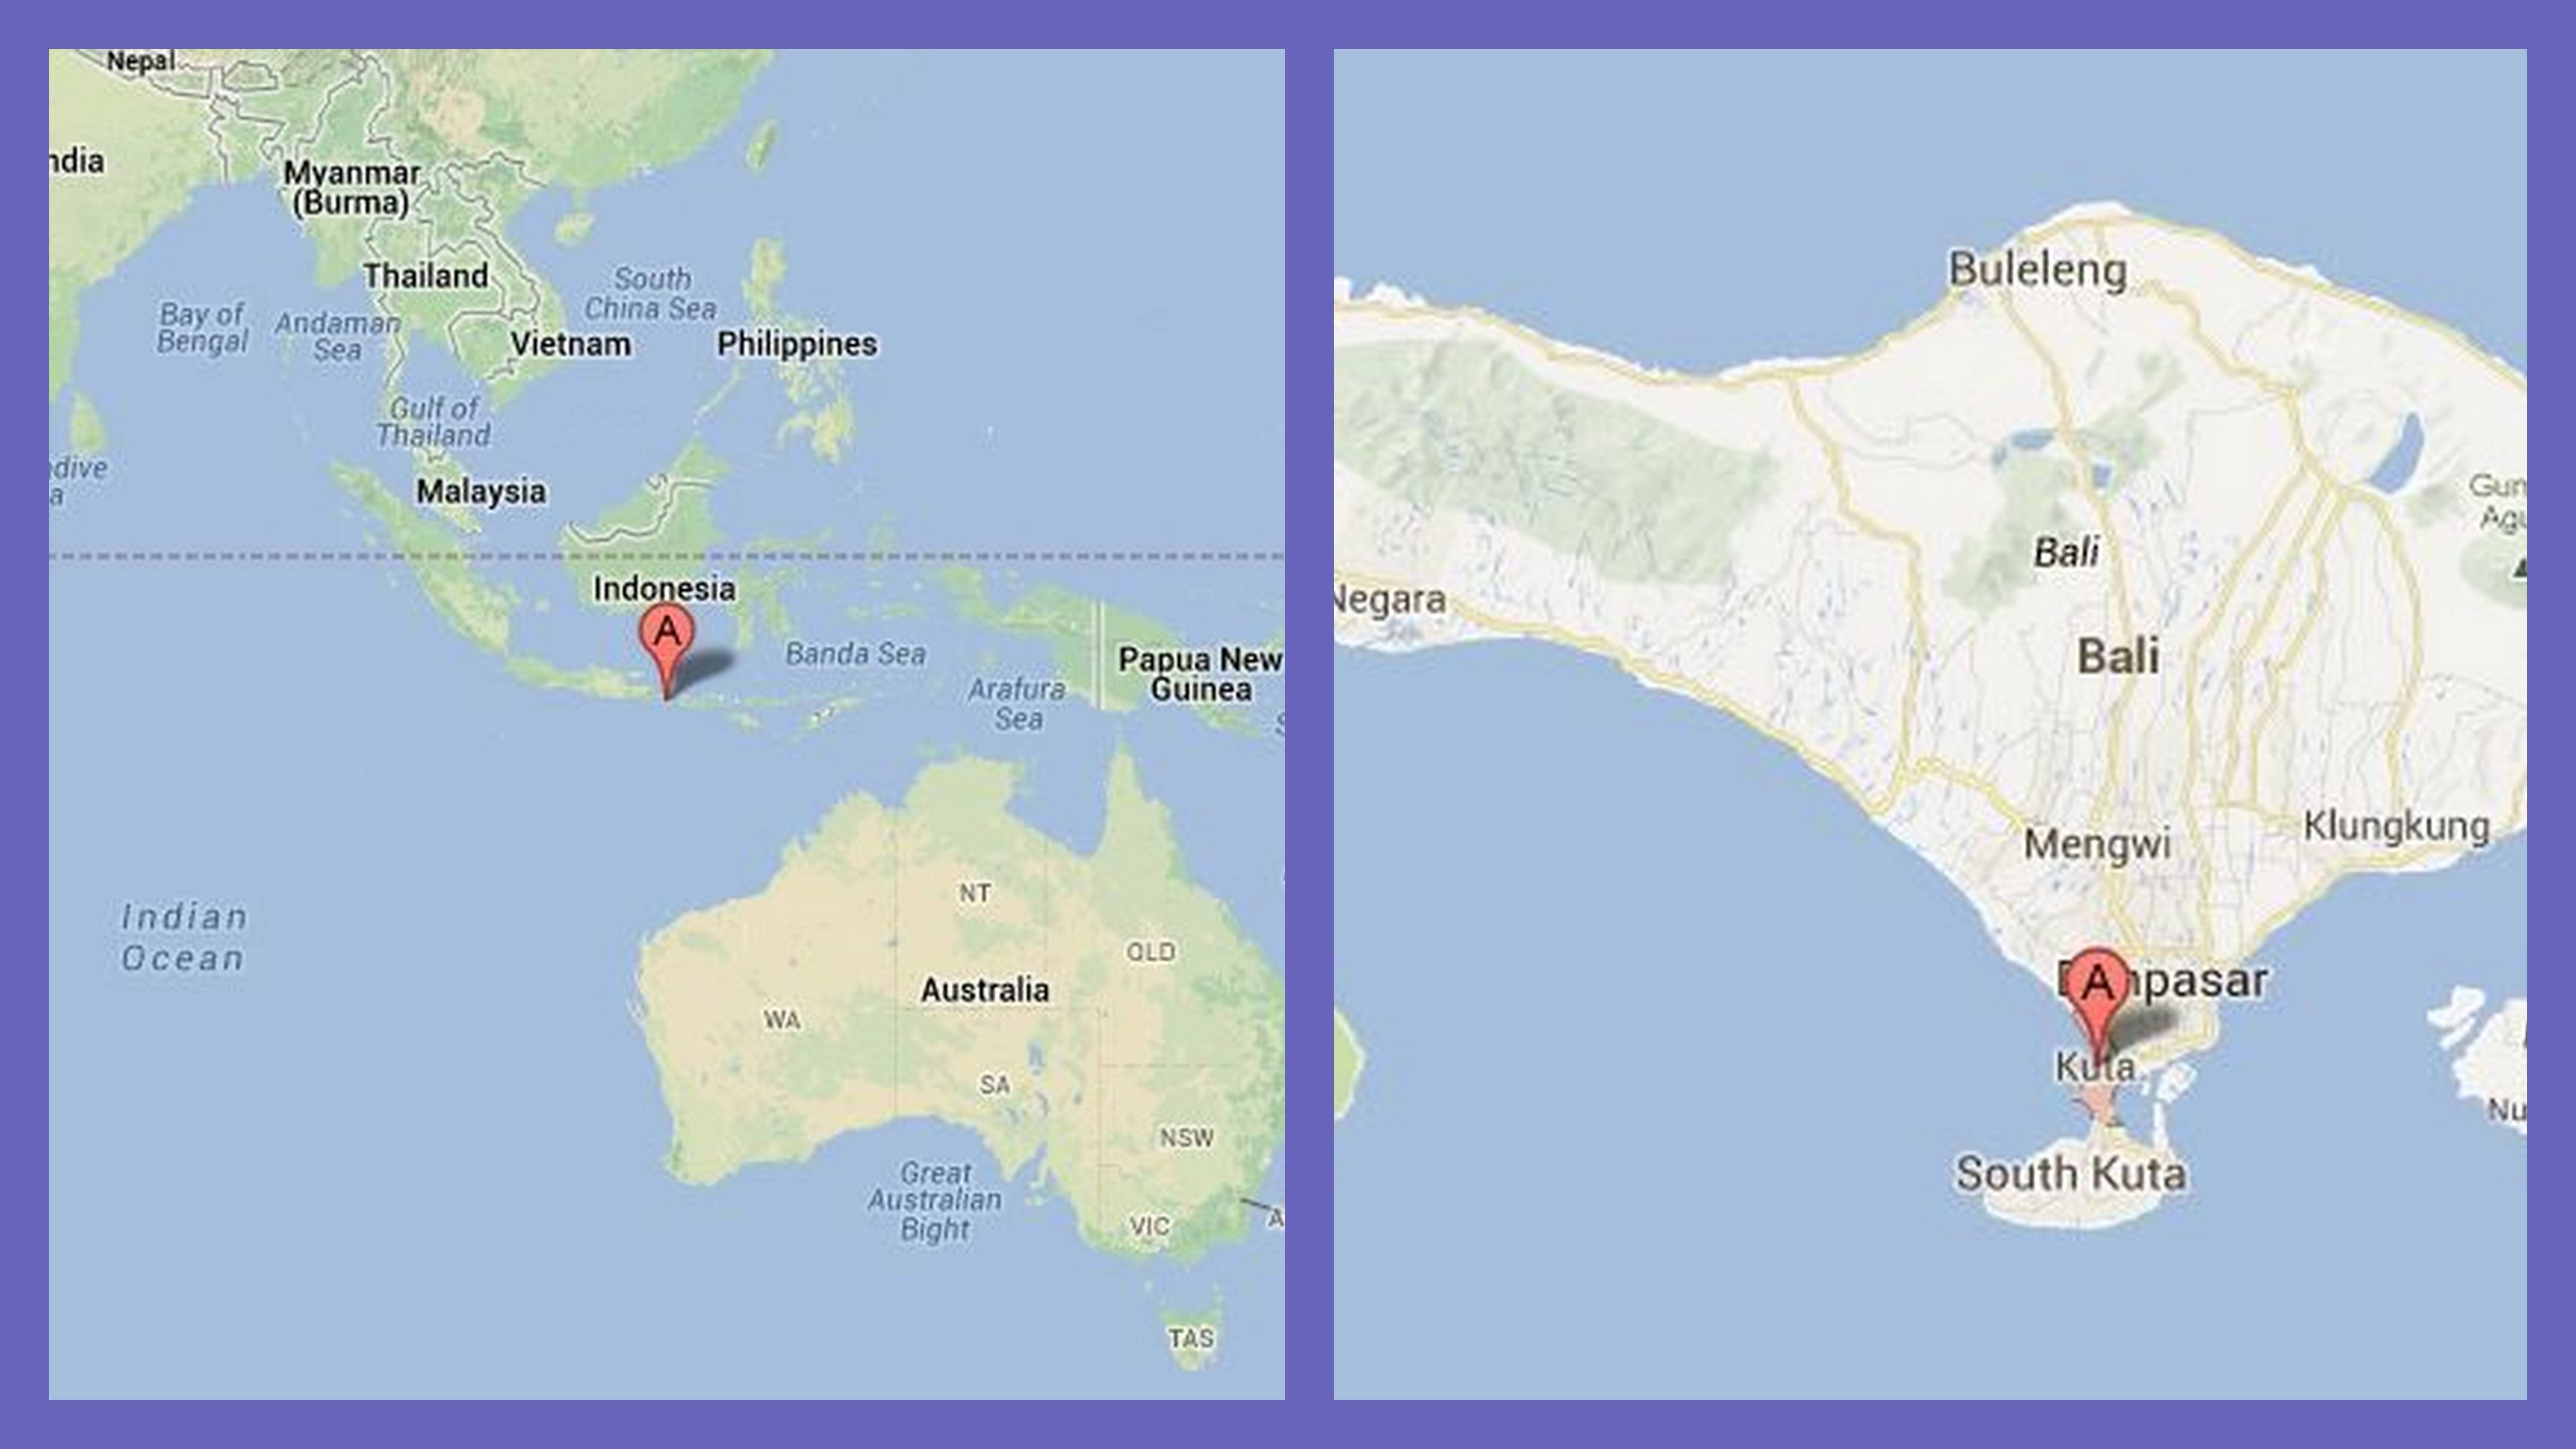 Остров бали, индонезия — куда сходить, где отдохнуть, как развлечься?